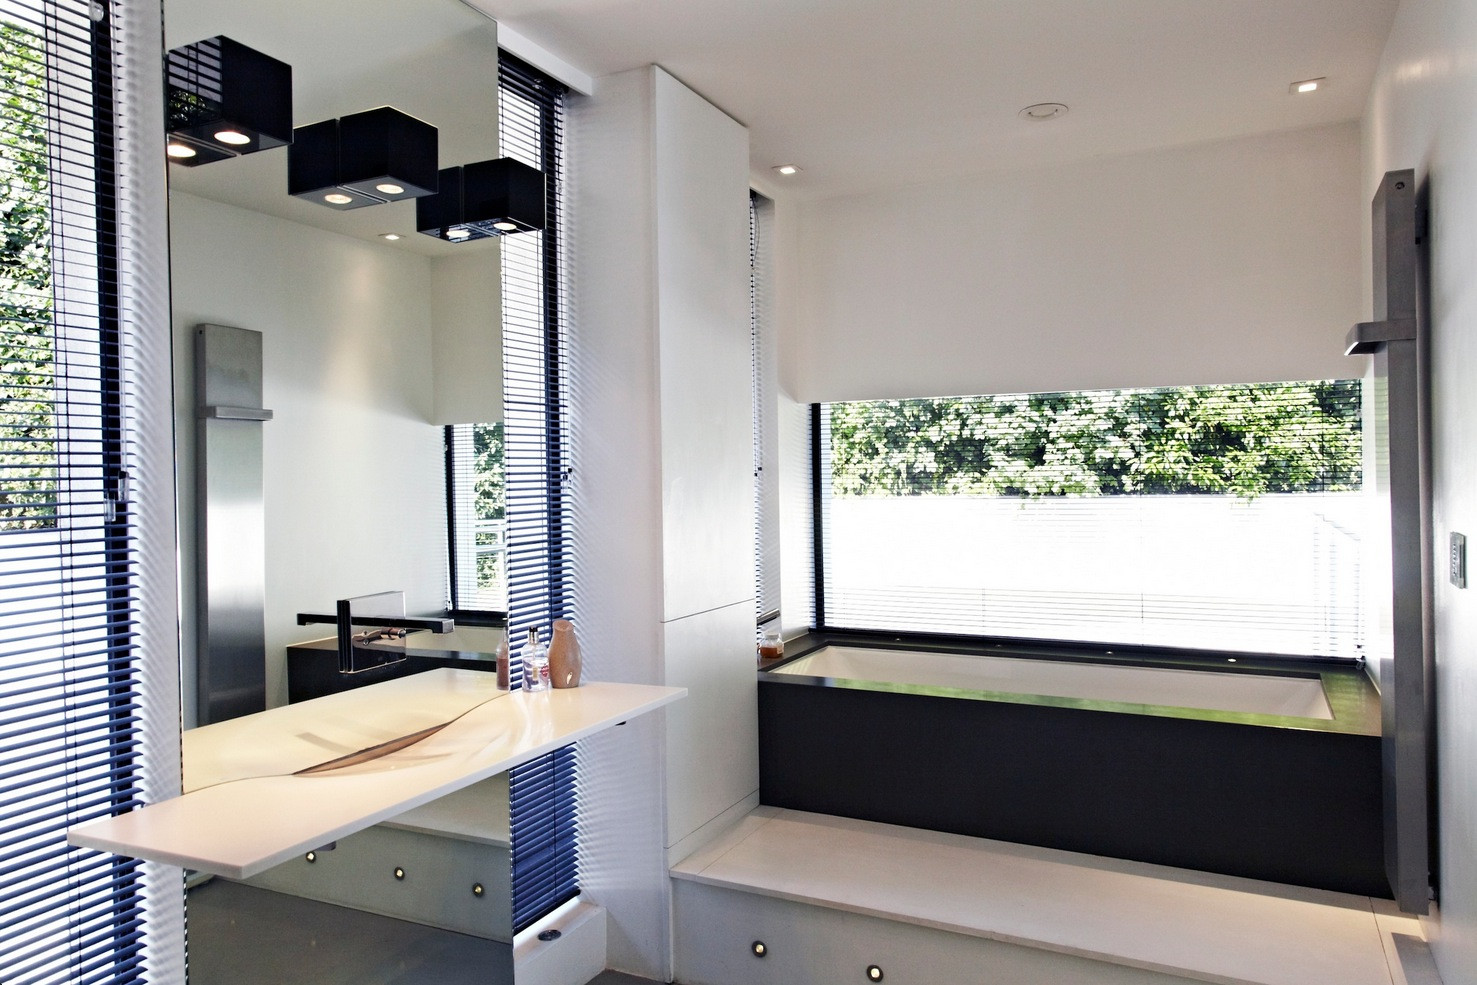 Bathroom Mirror Size
 wall size bathroom mirror Interior Design Ideas